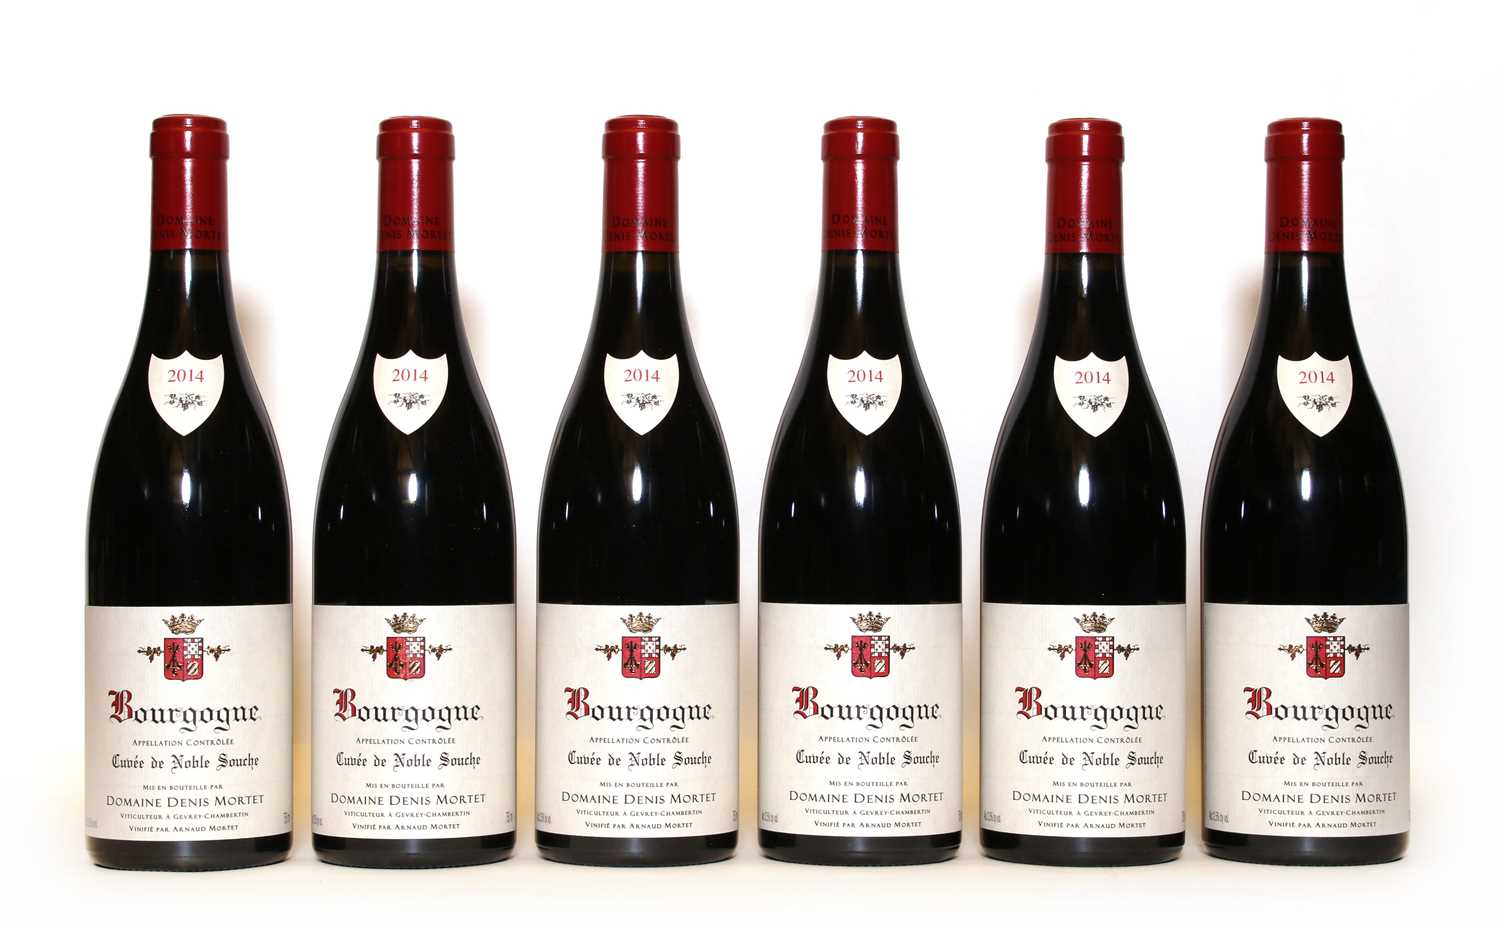 Lot 47 - Bourgogne, Cuvee de Noble Souche, Domaine Denis Mortet, 2014, six bottles (boxed)